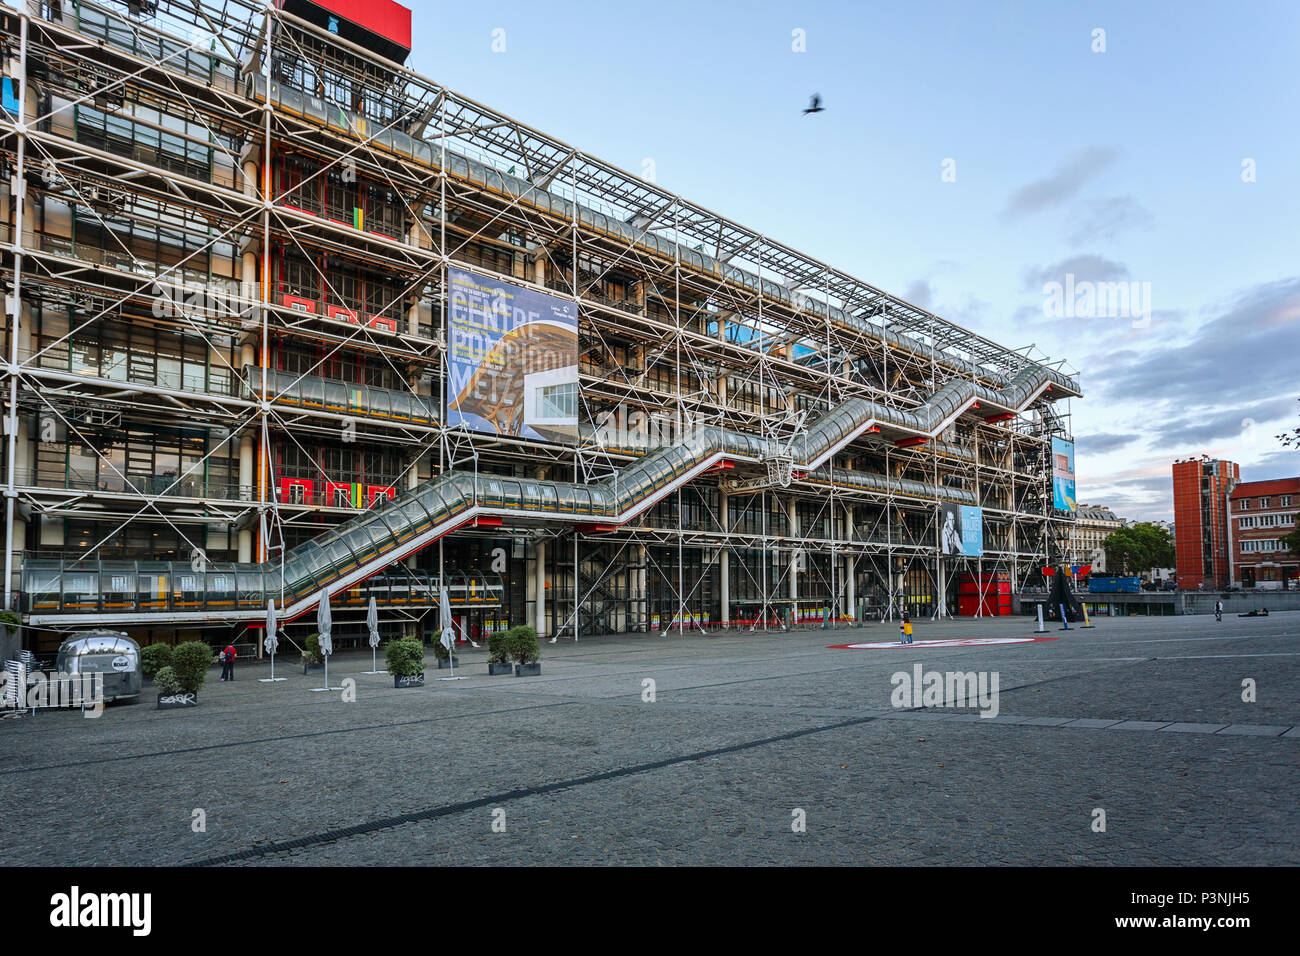 PARIS, FRANCE - 09 août 2017 : Centre Georges Pompidou. Les architectes Richard Rogers et Renzo Piano a été conçu dans le style de l'architecture high-tech. Banque D'Images